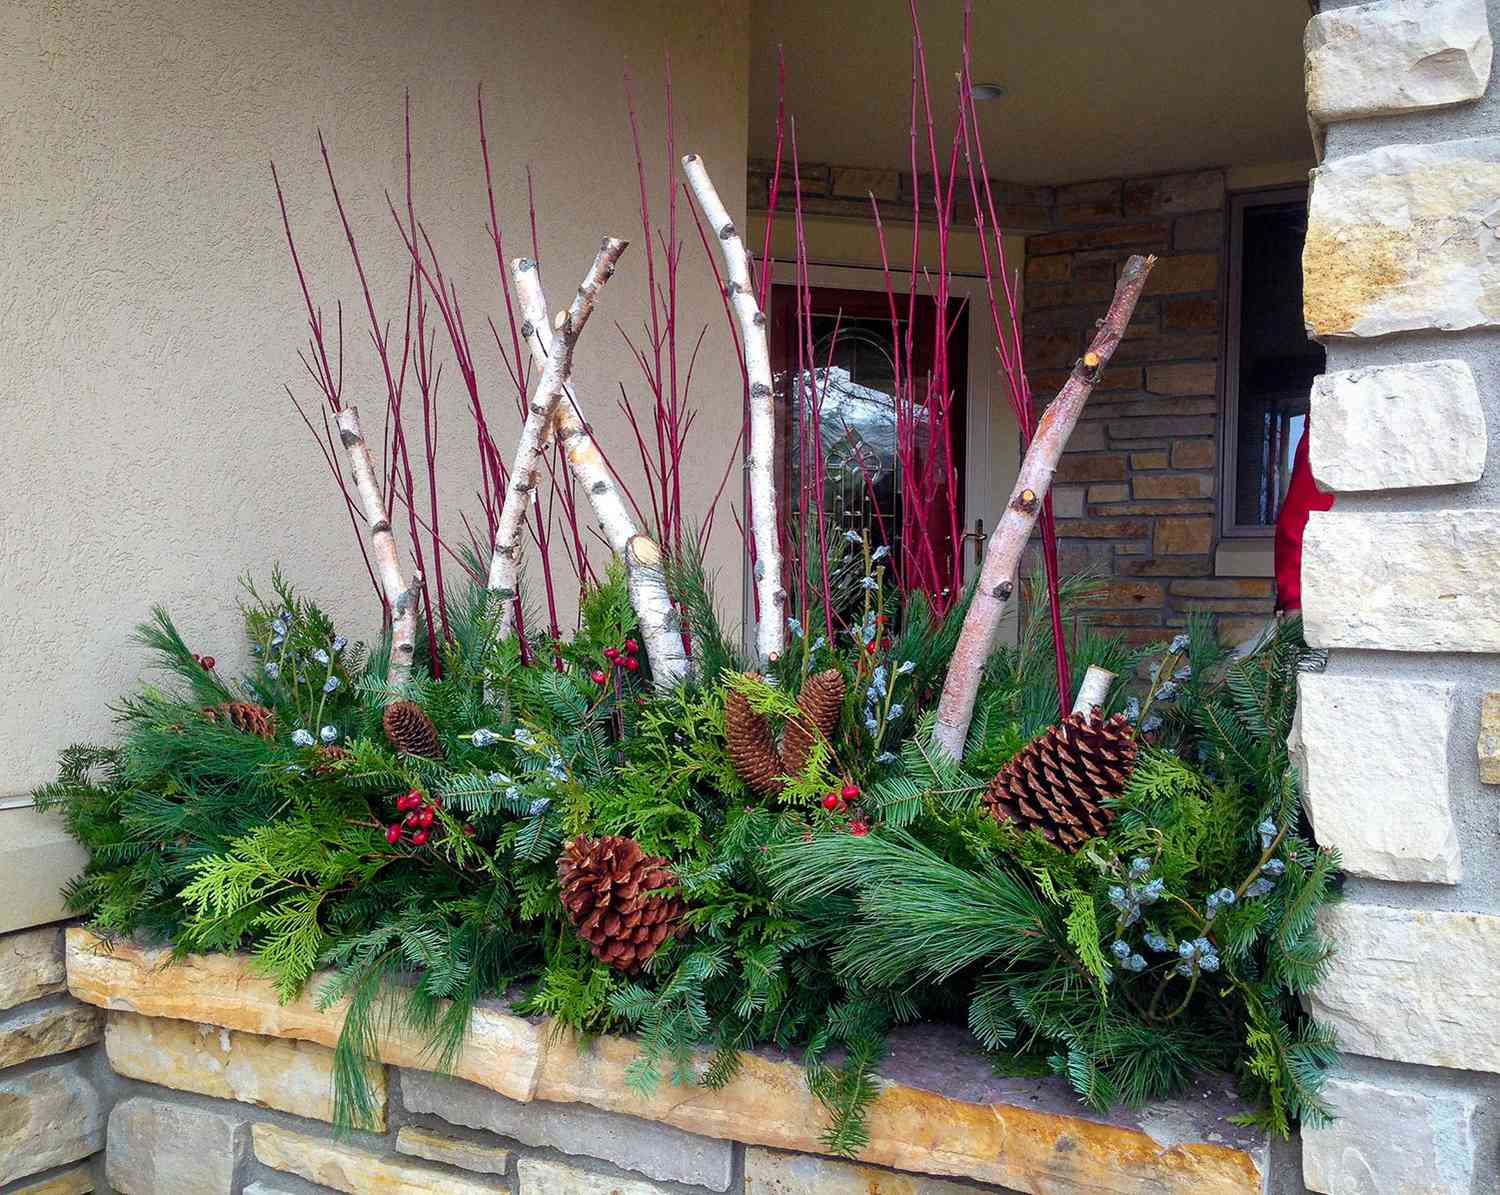 Jardinera de invierno con piñas, ramitas rojas, ramas de abedul y vegetación